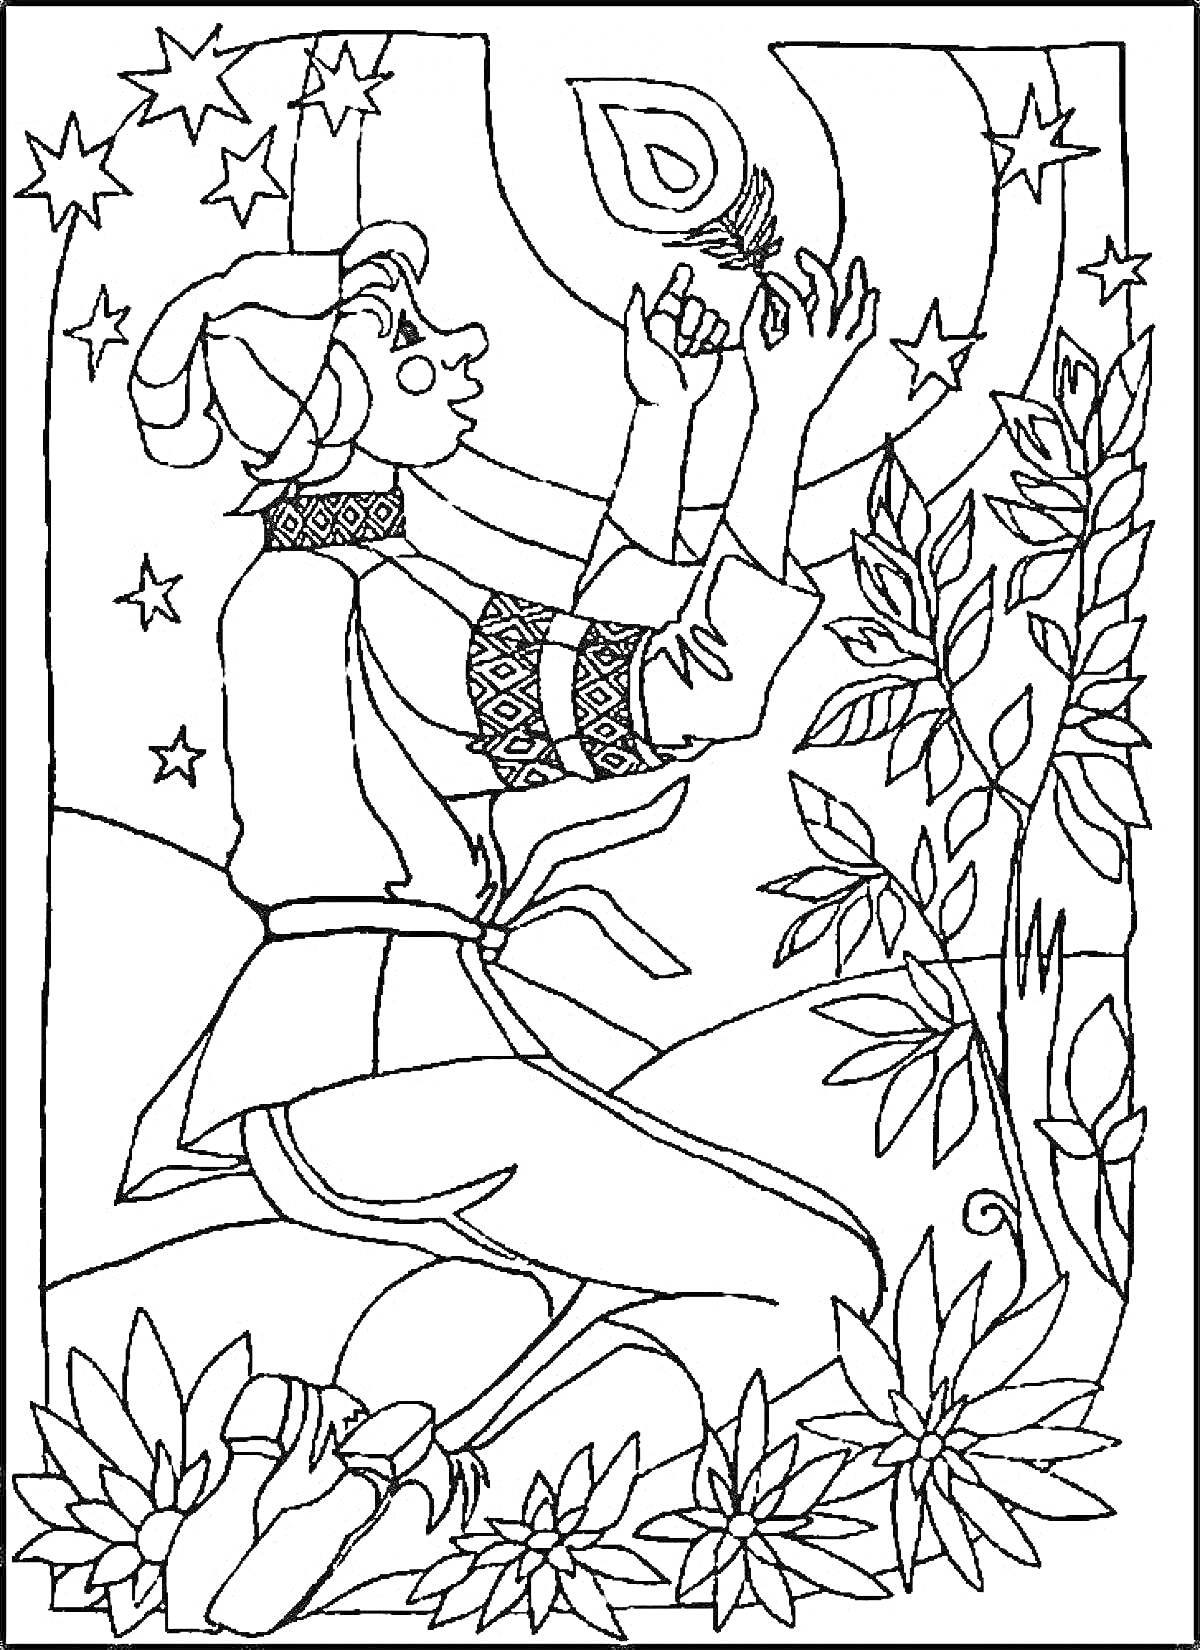 Раскраска Человек в традиционной одежде на коленях с жар-птицей в руках, деревья и звезды на заднем фоне, цветы на переднем плане